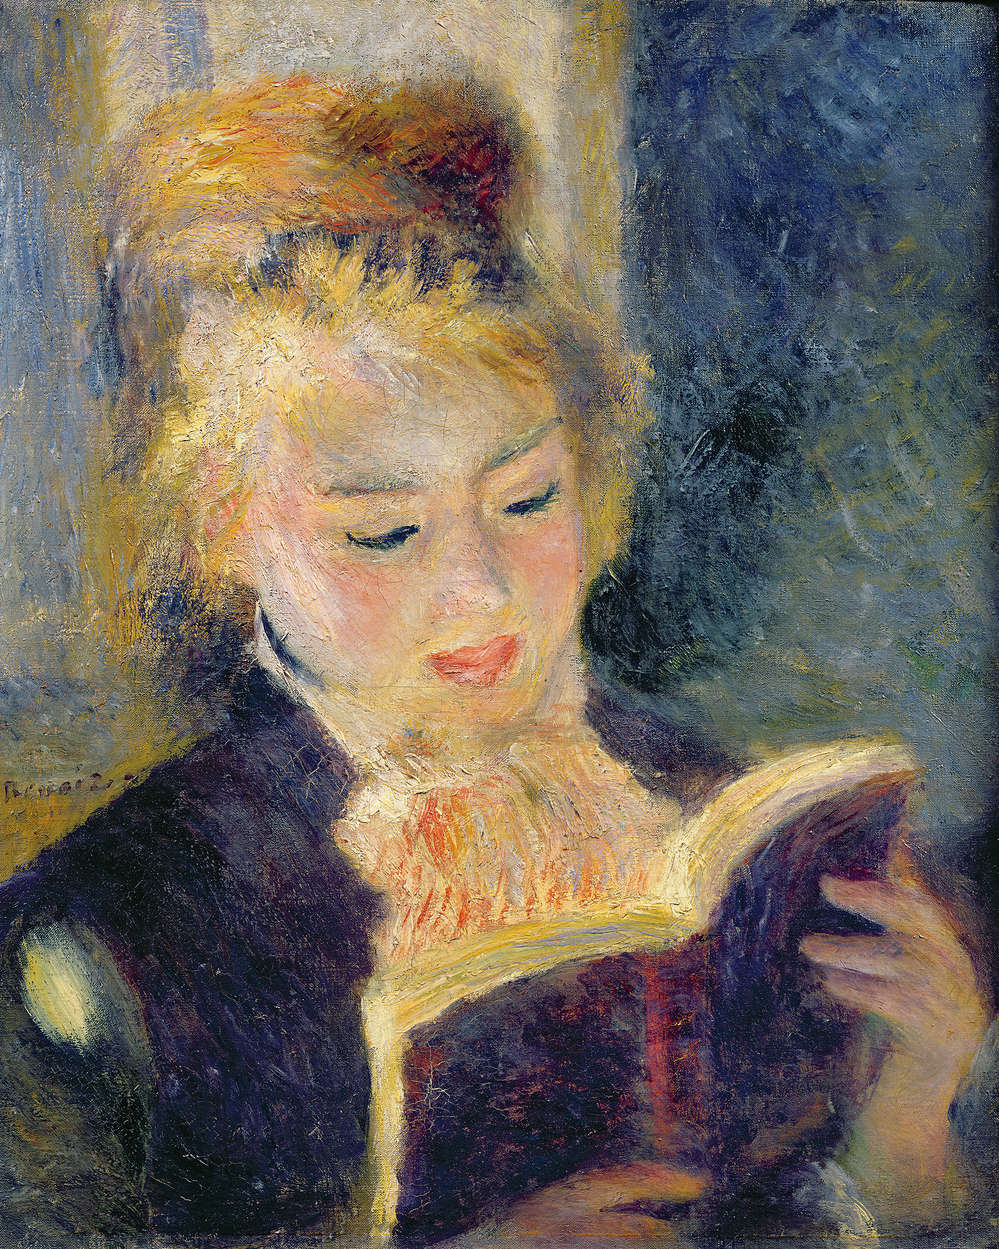             Fototapete "Lesendes Mädchen" von Pierre Auguste Renoir
        